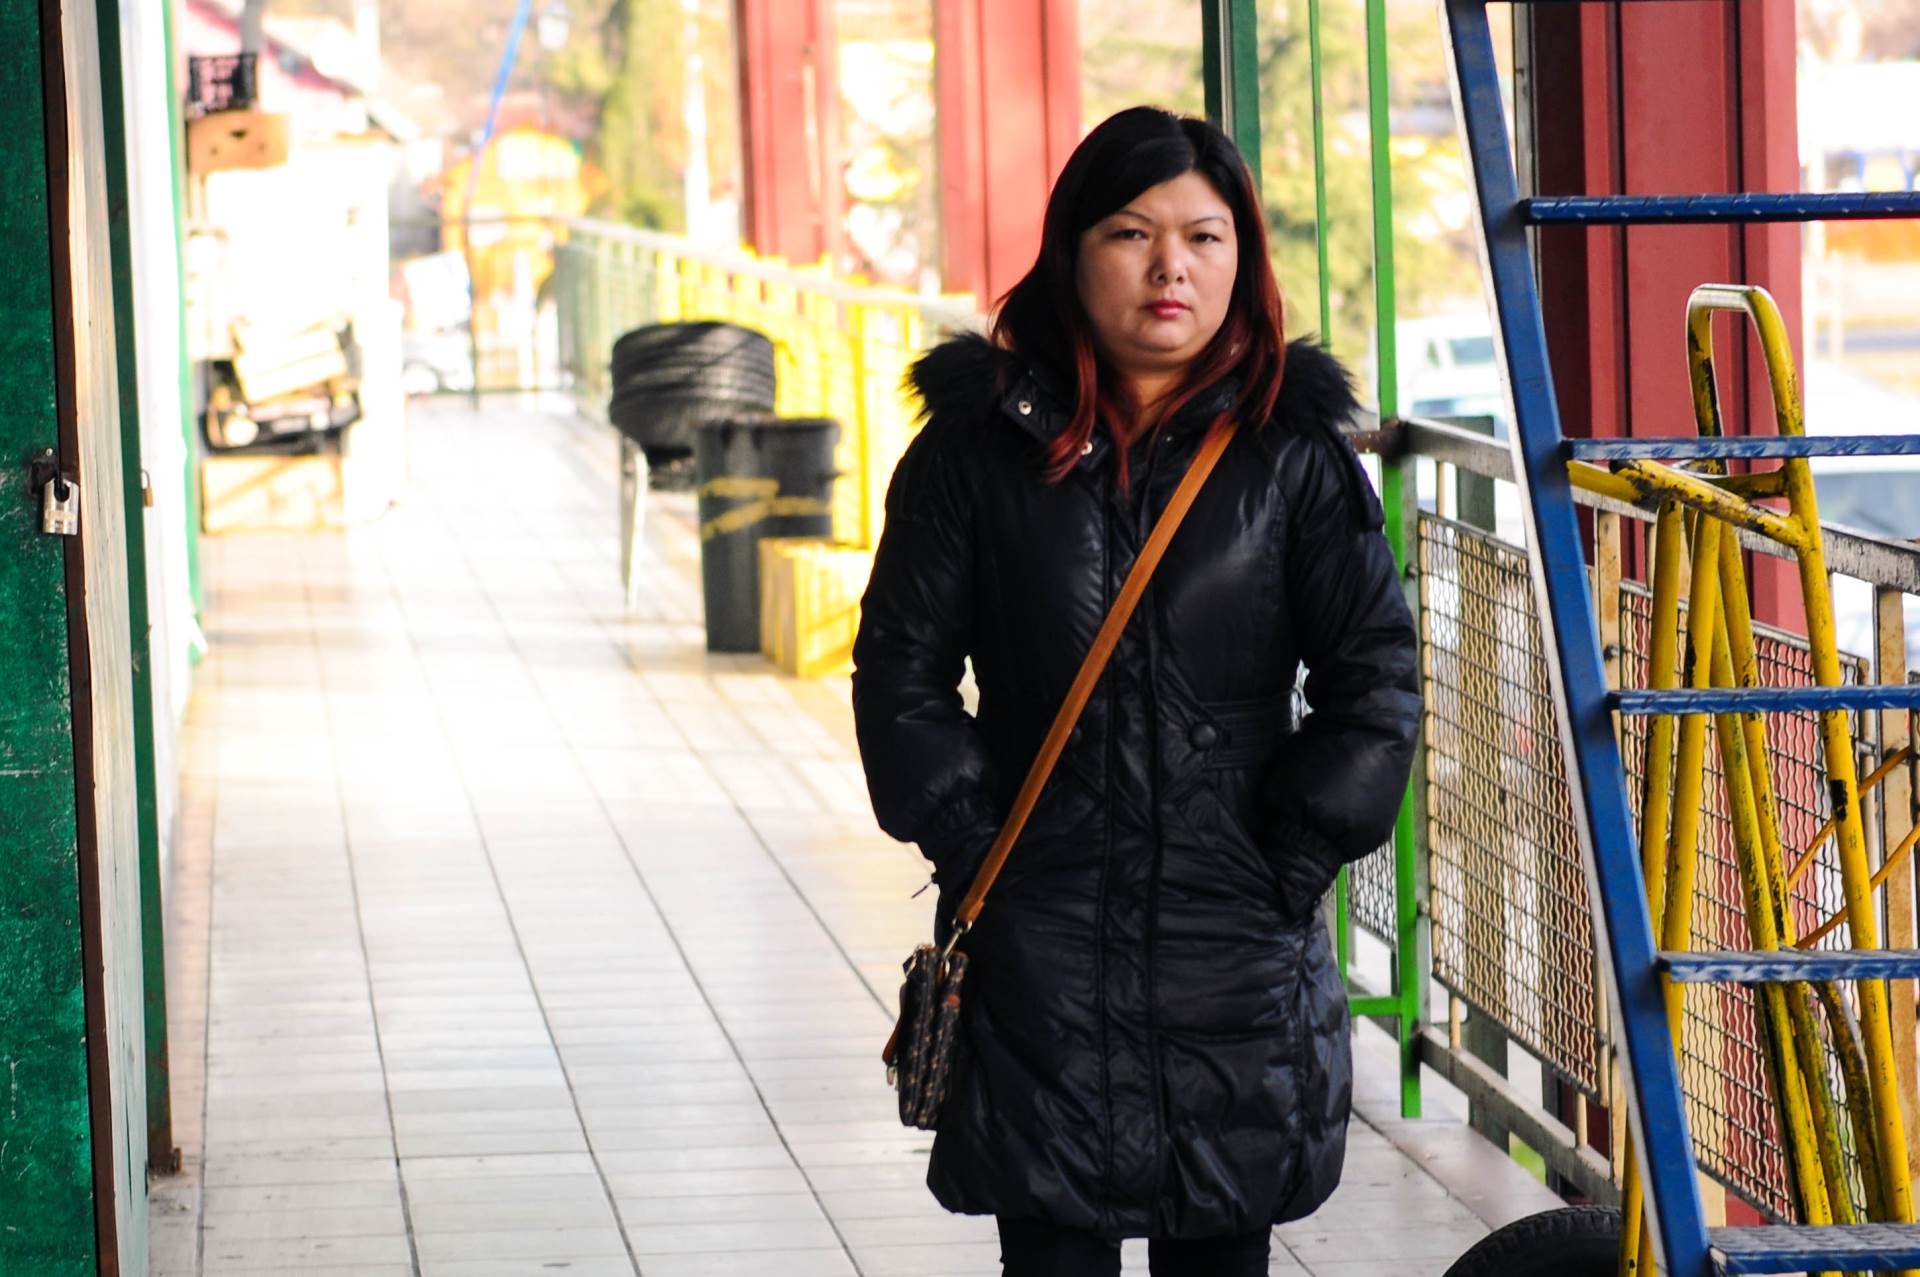  U Britaniji raste rasizam: Kineze na ulici pljuju i biju 